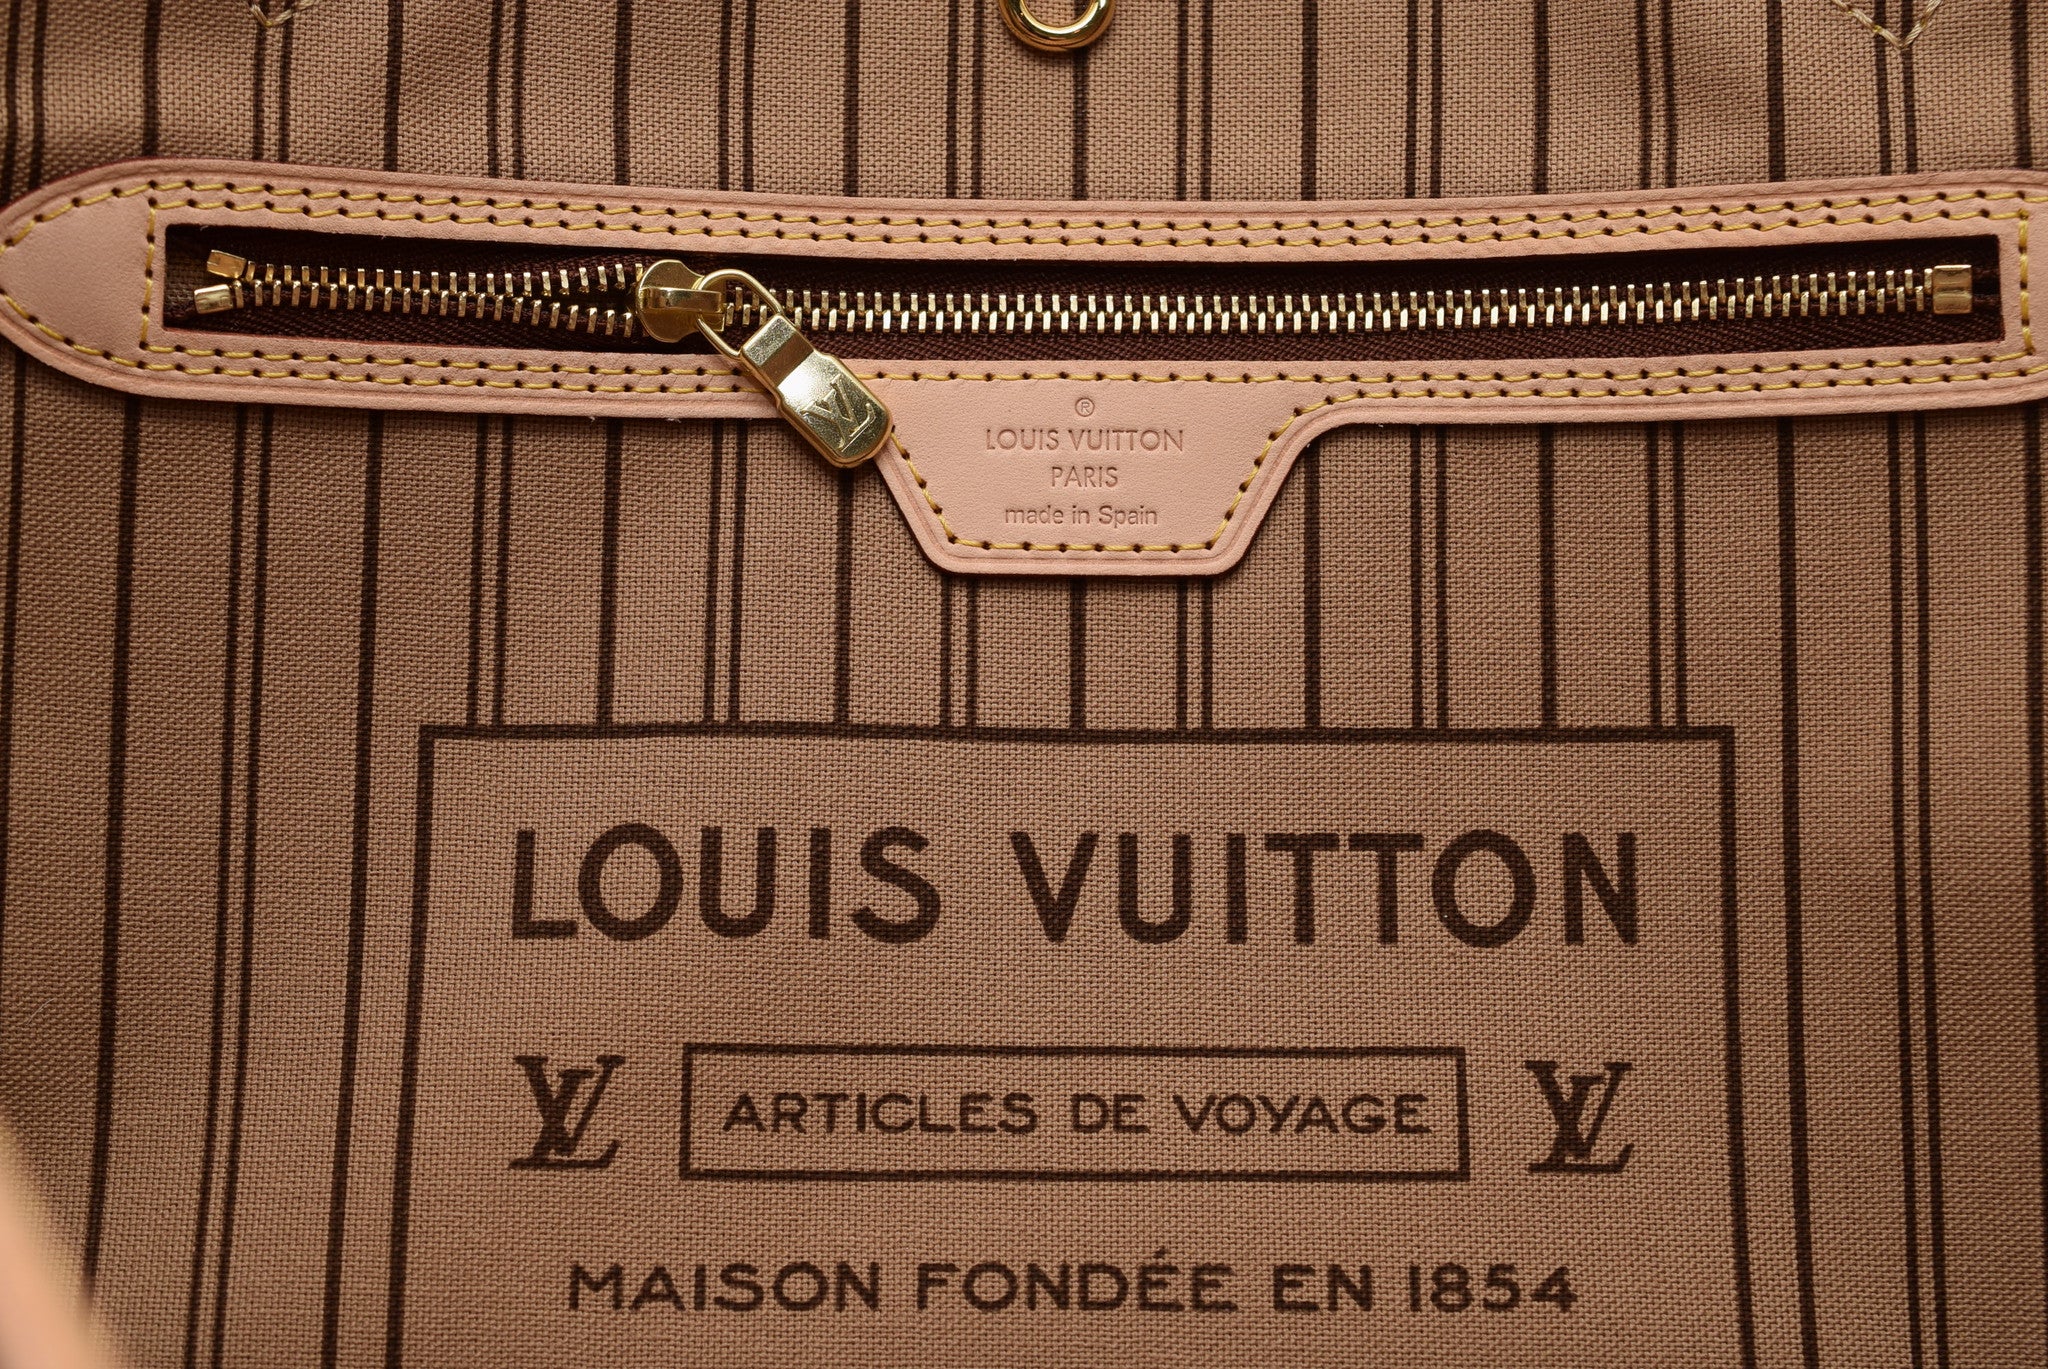 Louis Vuitton Articles De Voyage Maison Fondee En 1854 – Ventana Blog